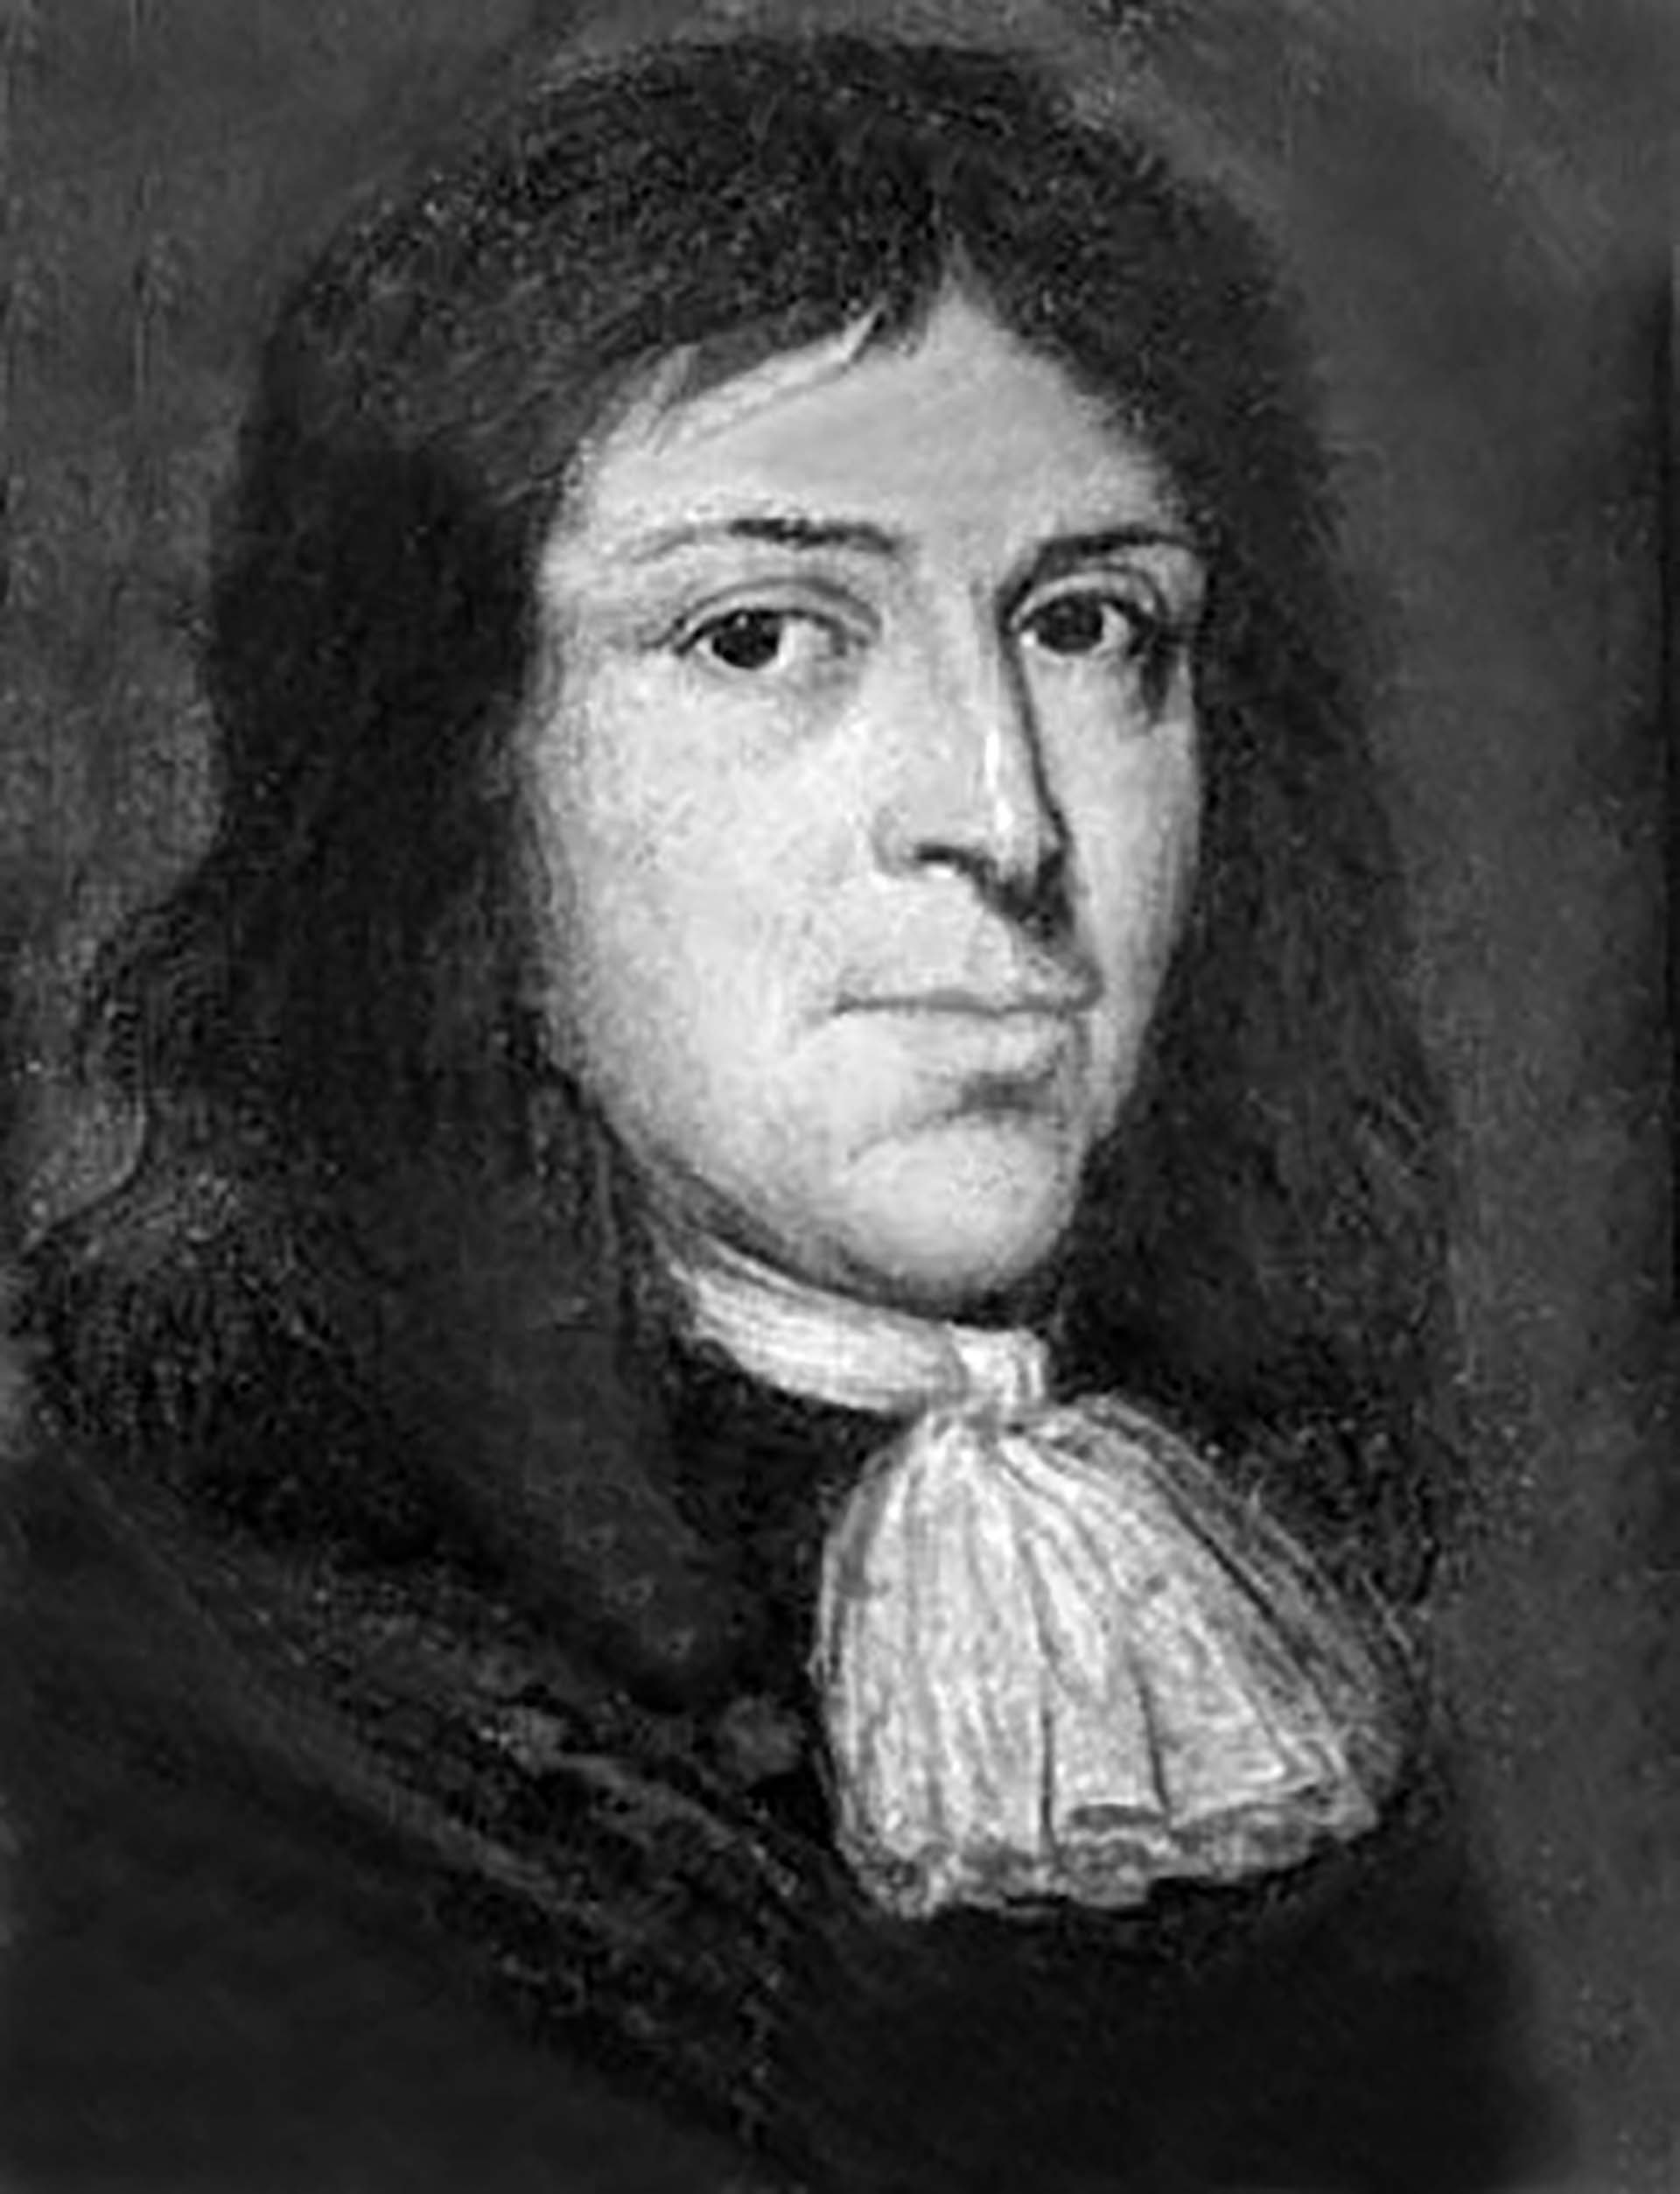 Retrato del pastor protestante Samuel Parris quien inició la cacería